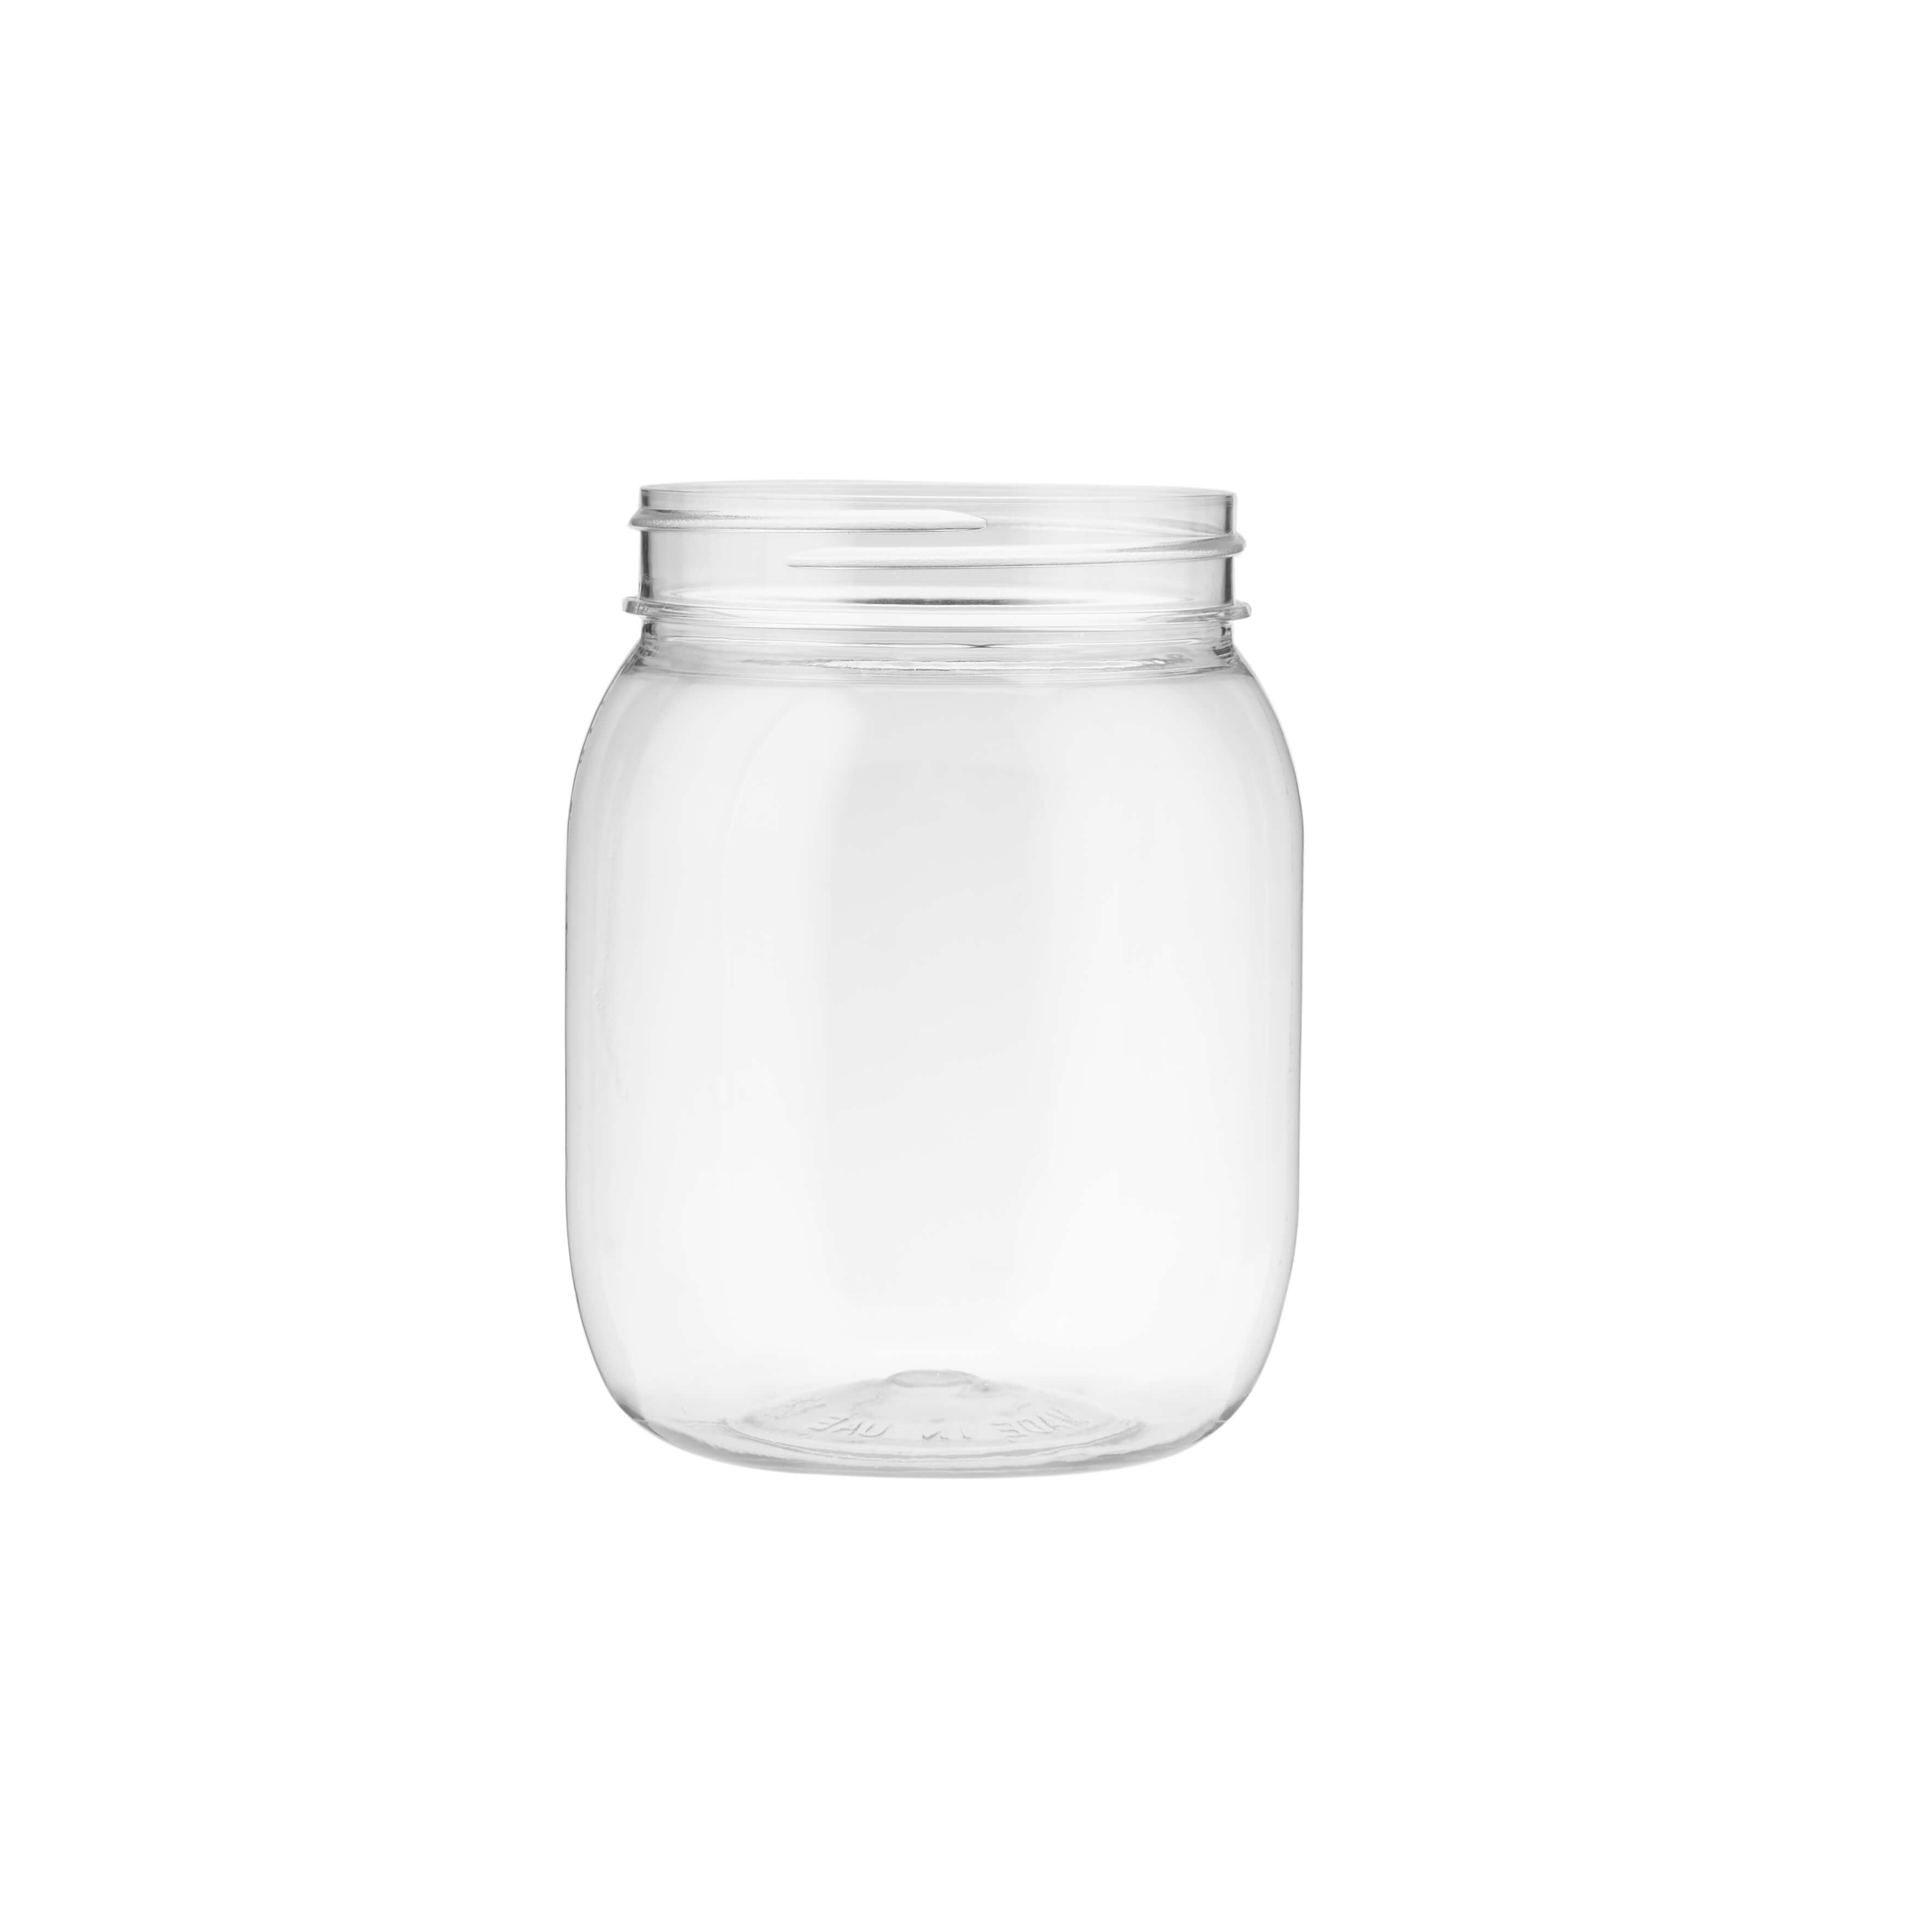 500ml Plastic Storage Jar With Lid - Hotpack Global